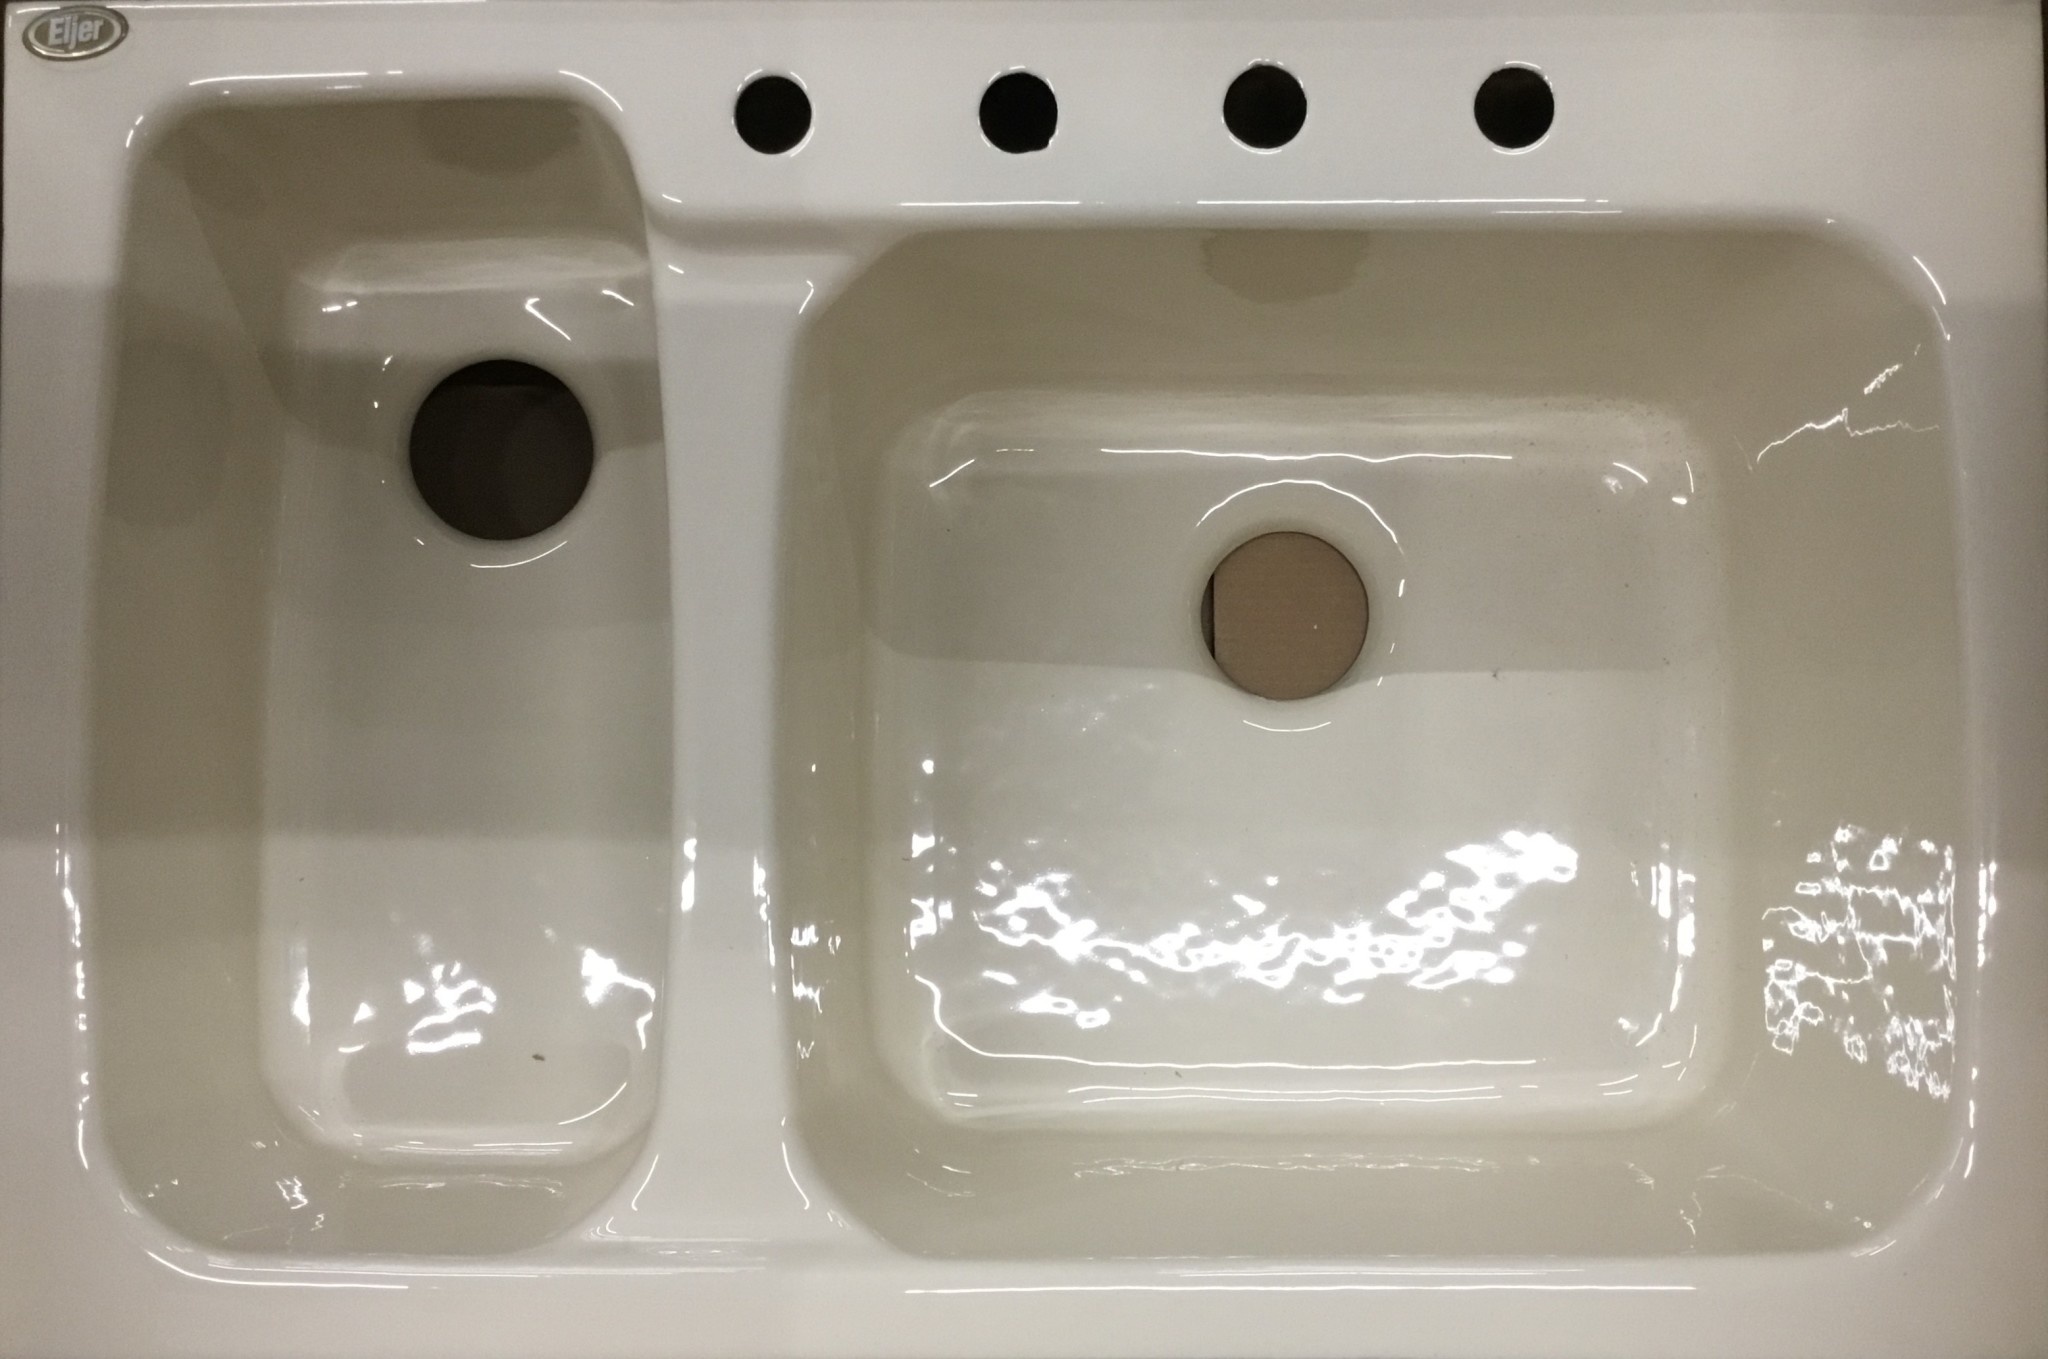 eljer kitchen sink soap dispenser